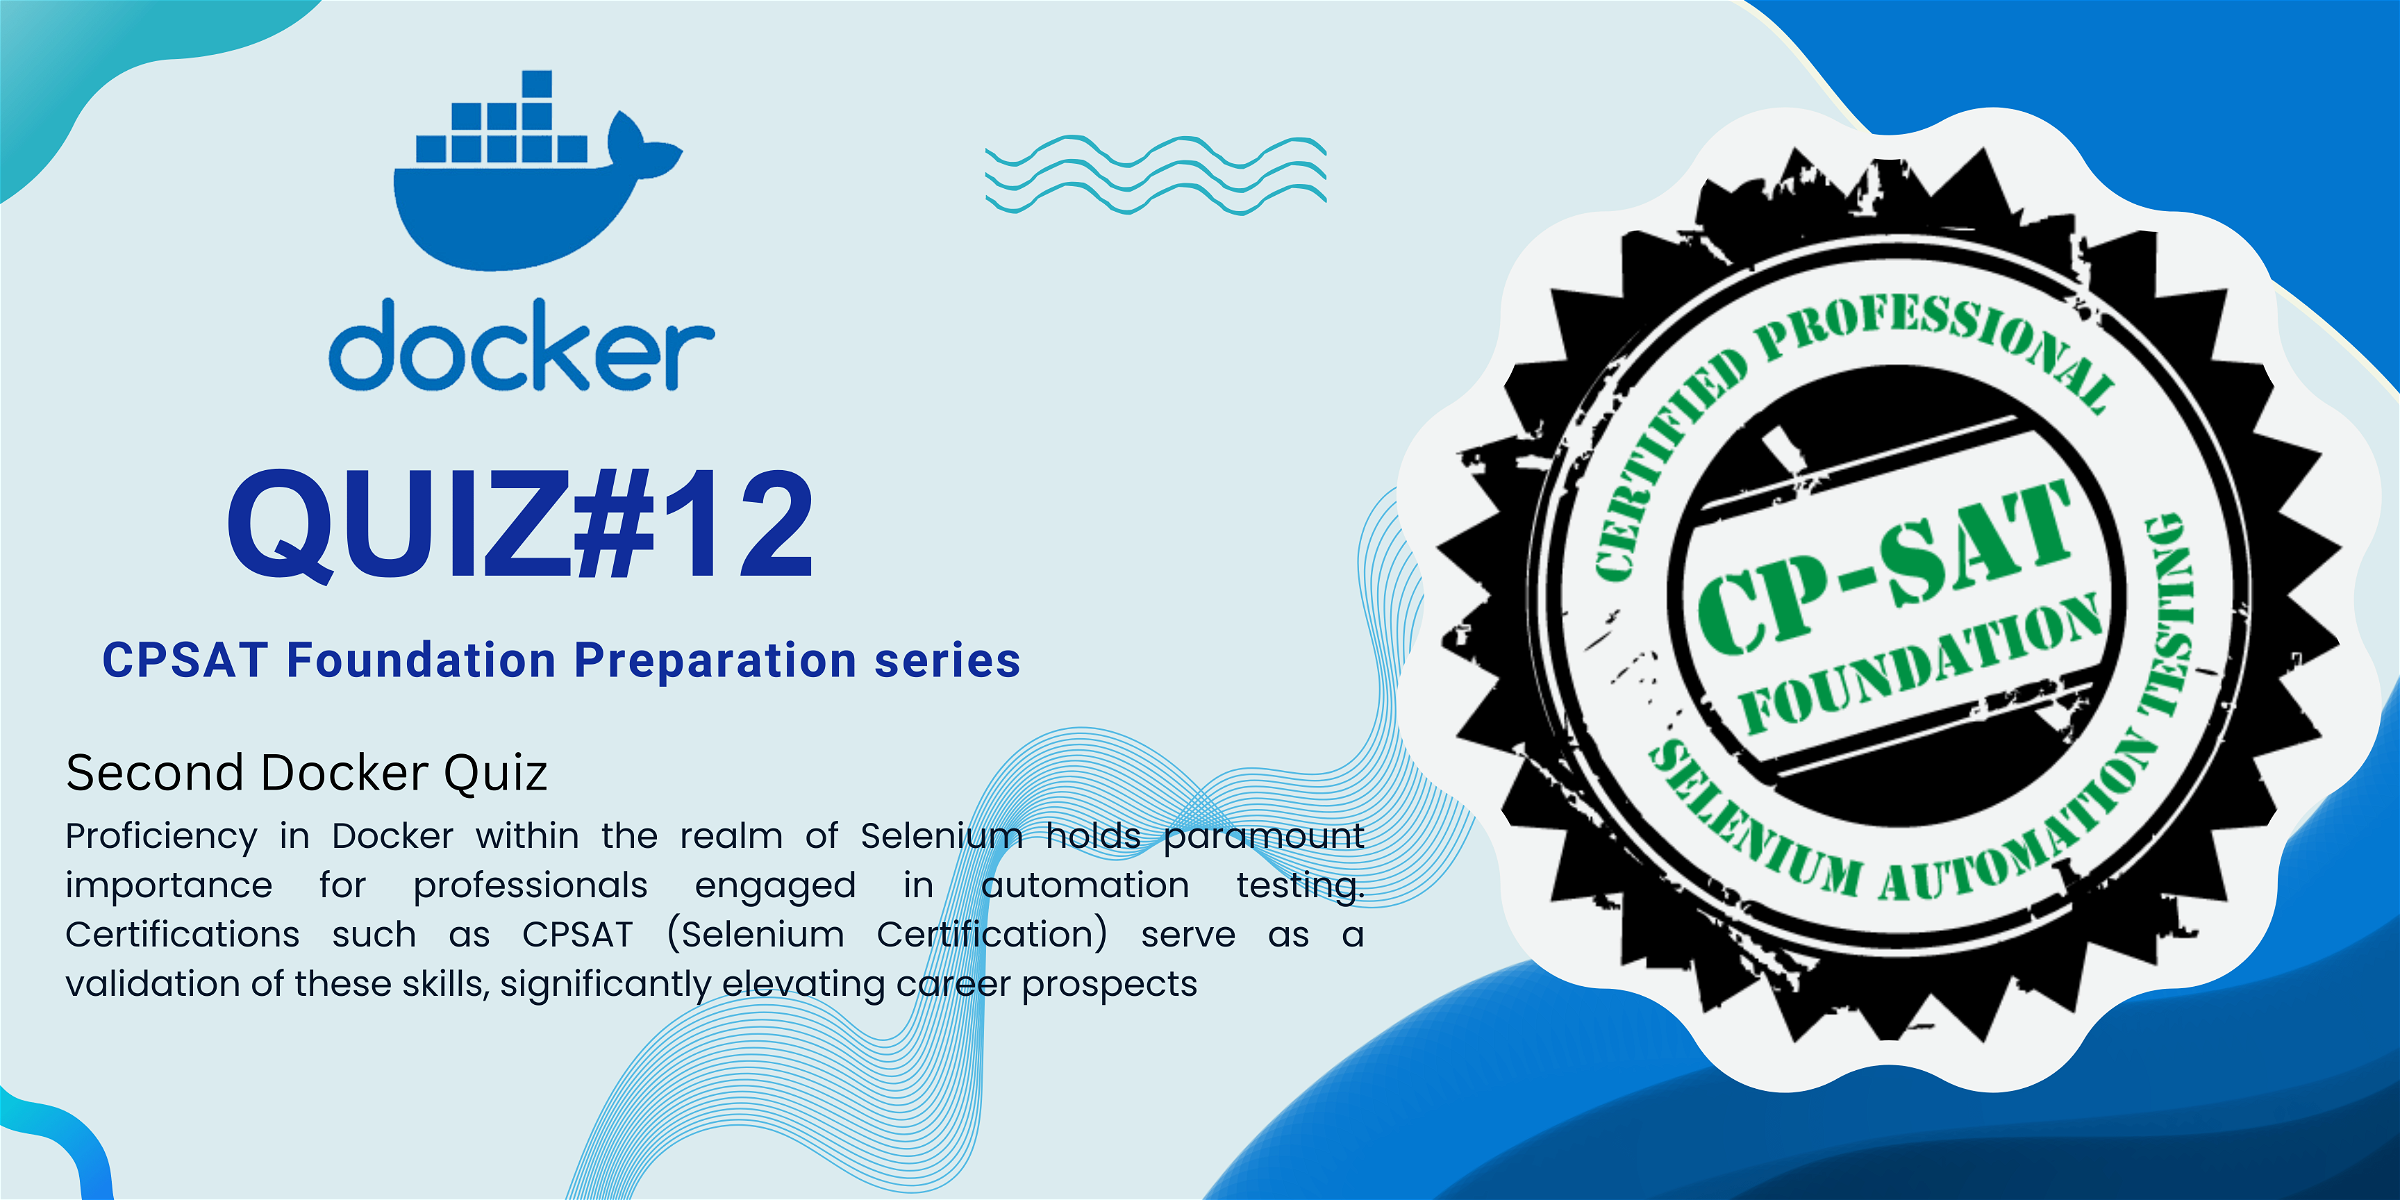 Quiz#12 CPSAT (Selenium Certification) preparation series